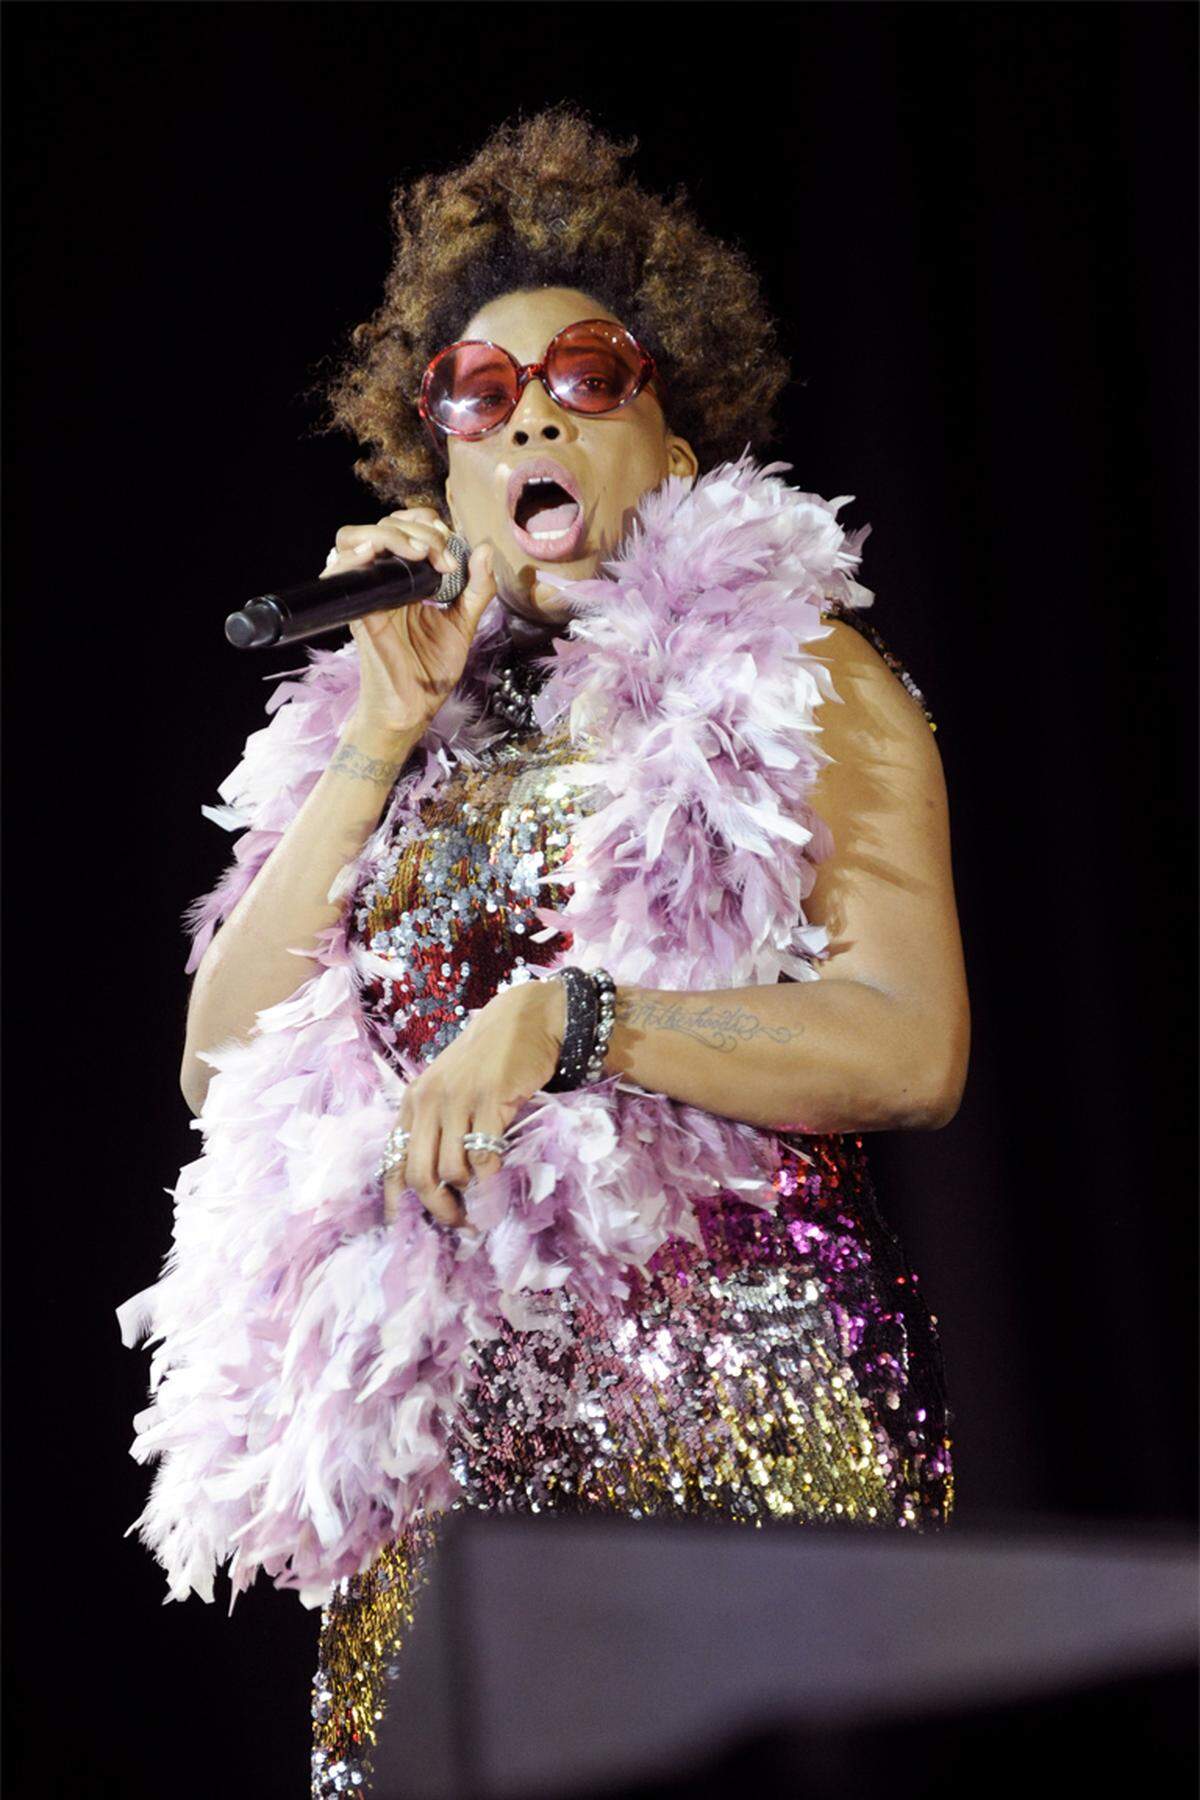 Wahre Euphorie war auch bei Hauptstage-Headlinerin Macy Gray über weiter Strecken nicht zu spüren. Beim Auftritt der mit rosa Sonnenbrille und bunter Federboa ausgestatteten Soul-Sängerin, die Ende der 1990er-Jahre mit ihrem Hit "I try" auch hierzulande Chartserfolge feierte, wäre durchaus noch Platz im Publikum gewesen.